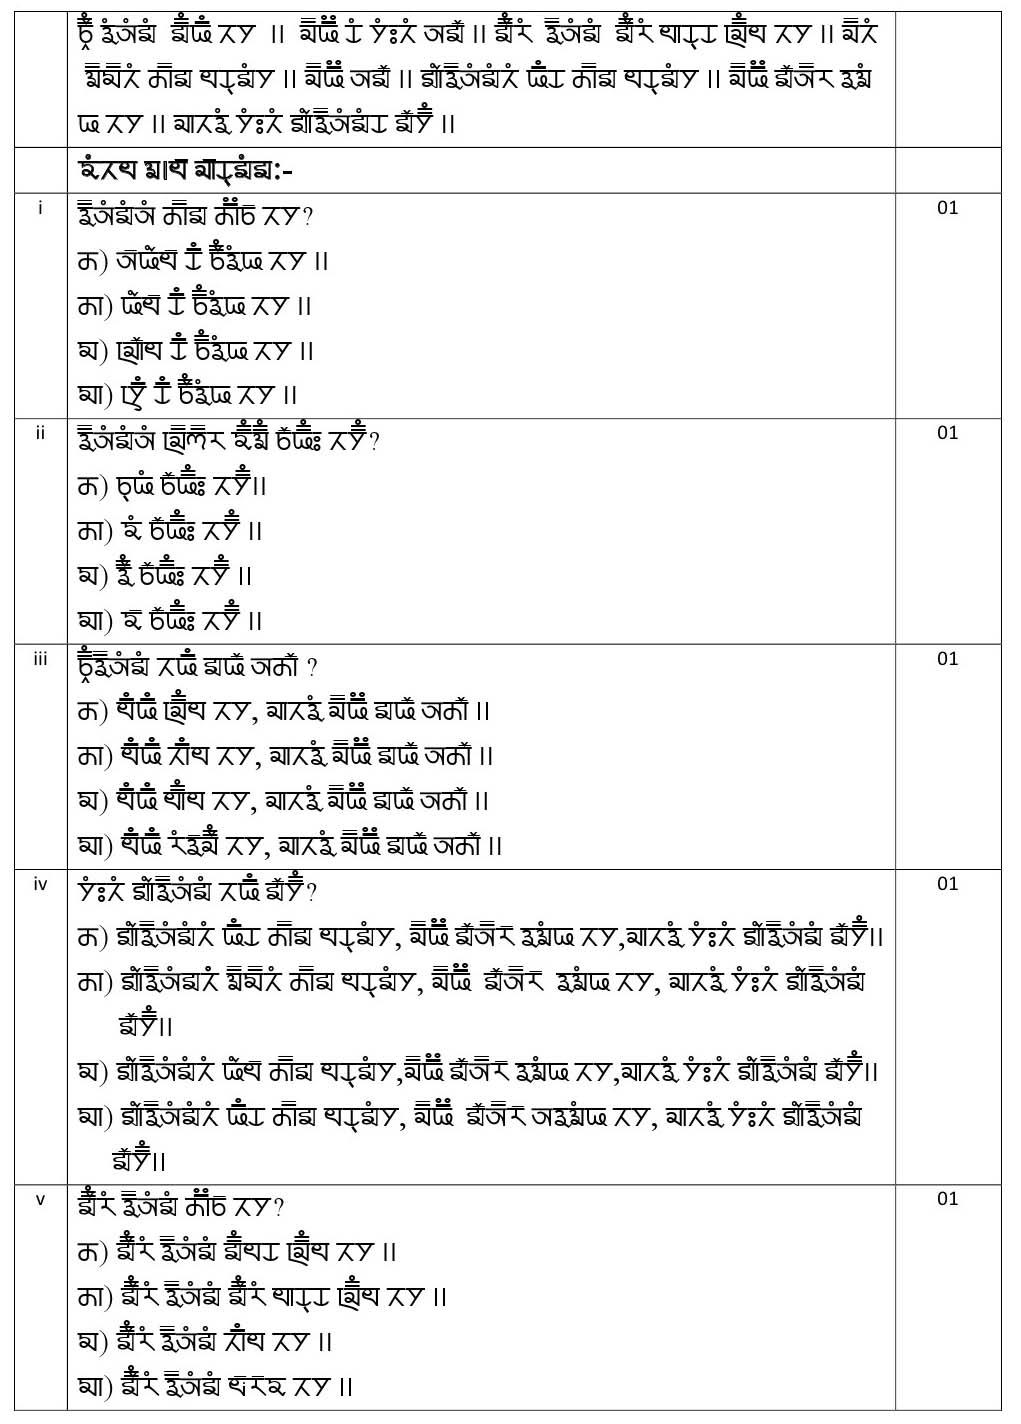 Gurung CBSE Class X Sample Question Paper 2020 21 - Image 3